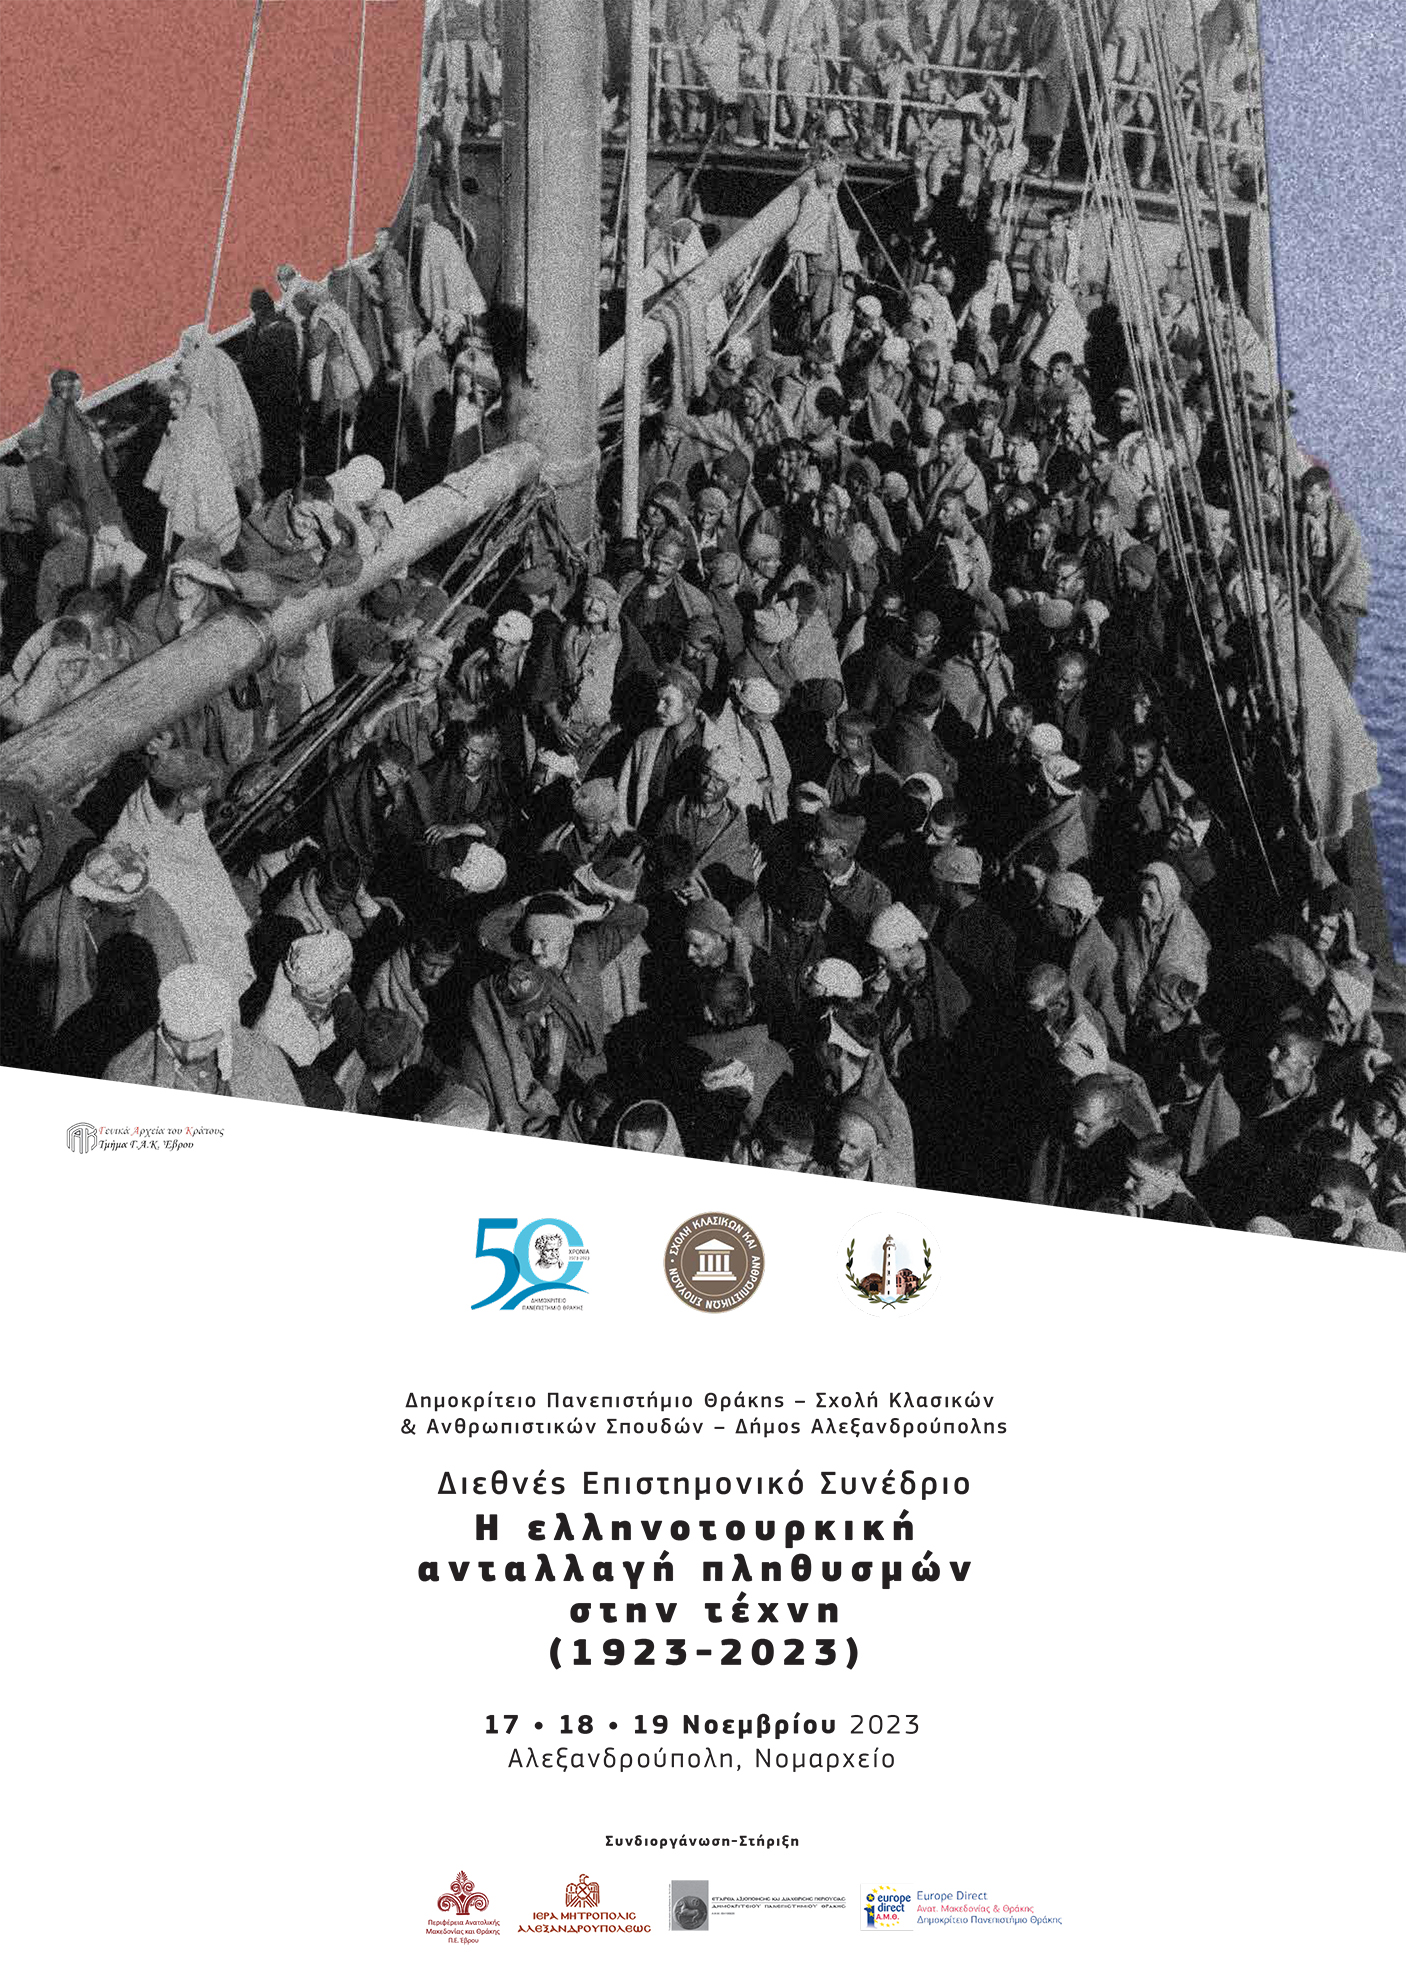 Αλεξανδρούπολη: Διεθνές Επιστημονικό Συνέδριο “Η ελληνοτουρκική ανταλλαγή πληθυσμών στην τέχνη (1923-2023)”